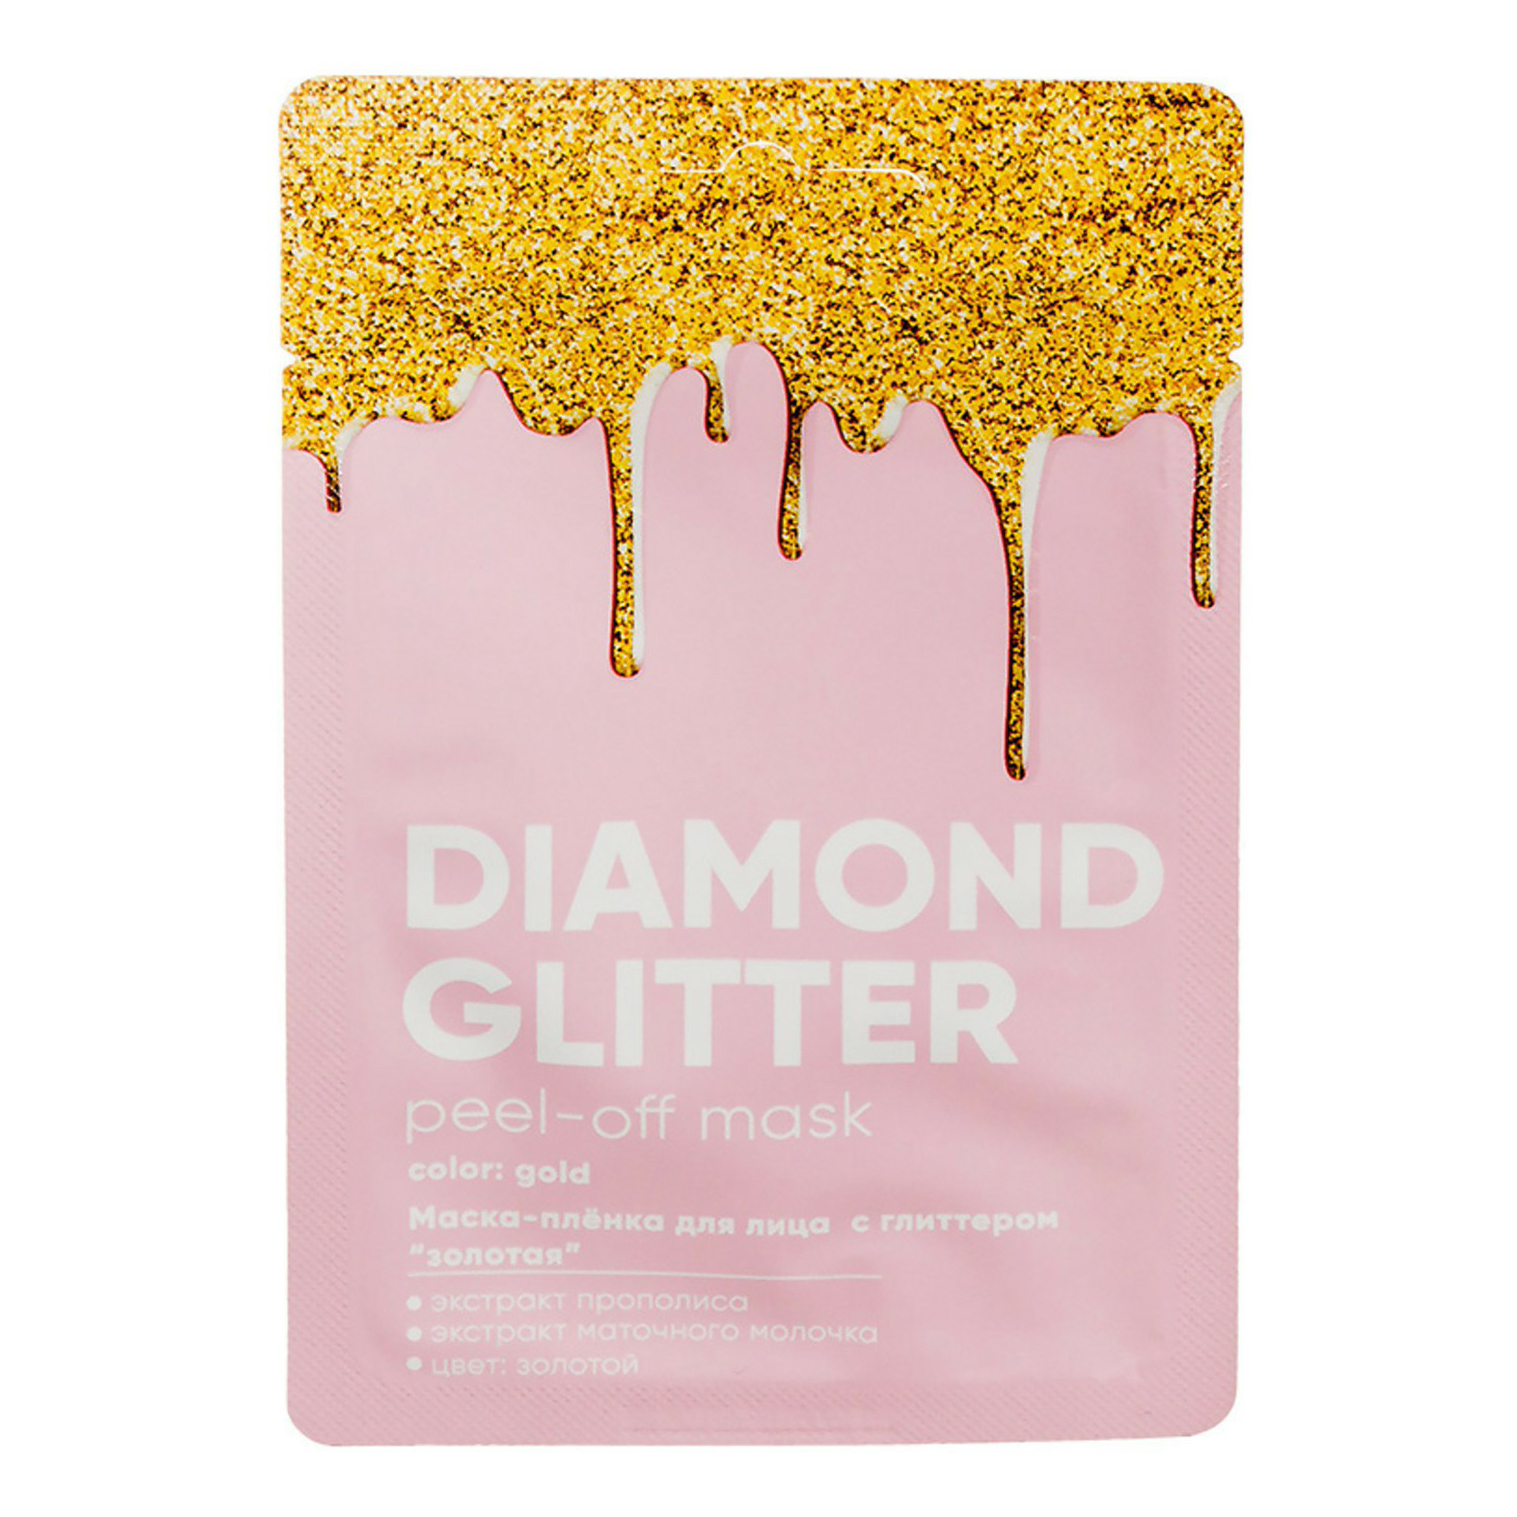 Маска-пленка для лица Л'Этуаль Funky Fun Diamond glitter с глиттером золотая 10 г fedua золотая маска для рук 45